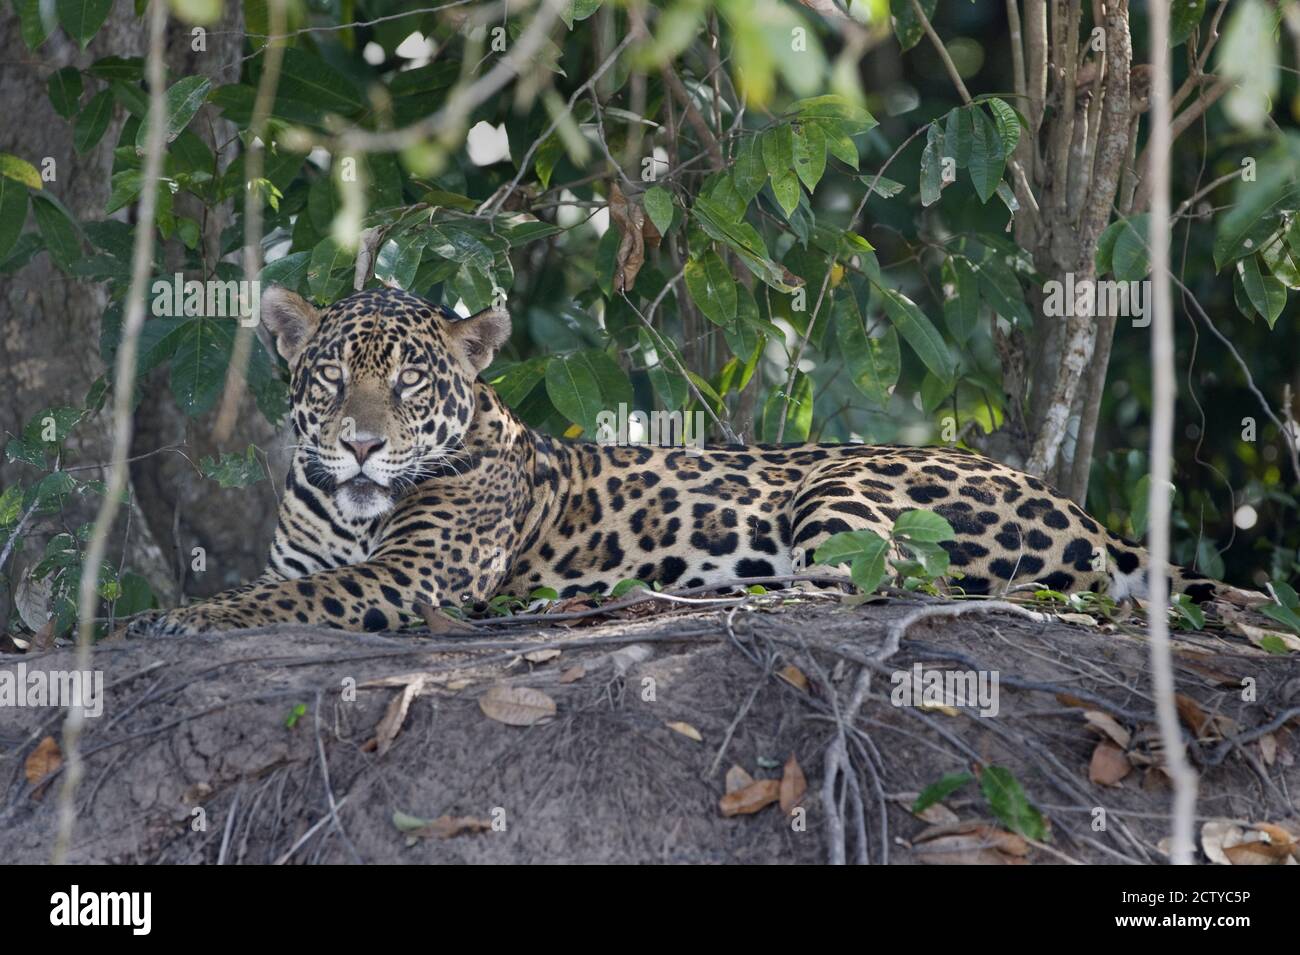 Close-up of a jaguar (Panthera onca), Brazil Stock Photo